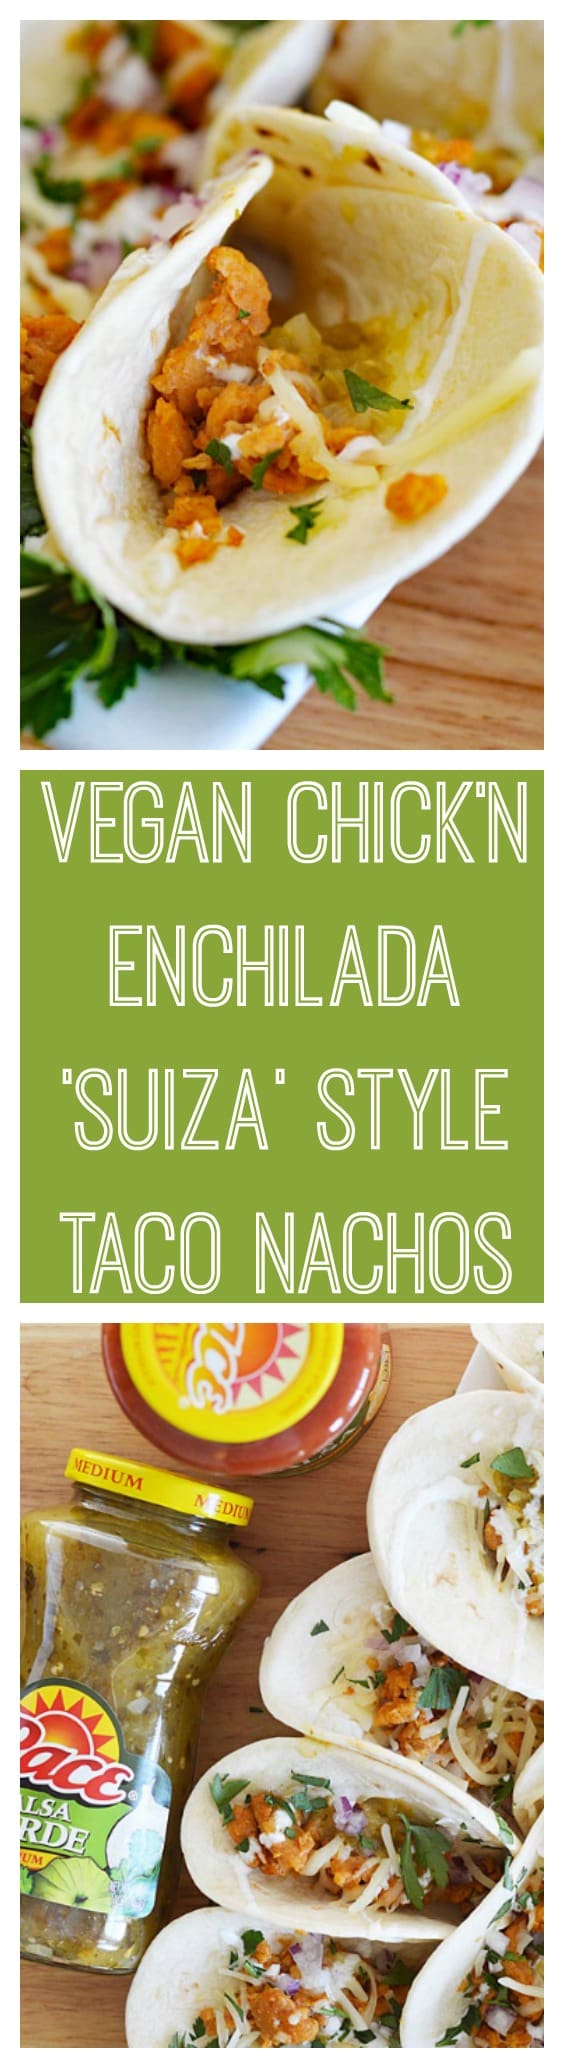 Vegan Chicken Enchiladas Suiza Style Taco Nachos